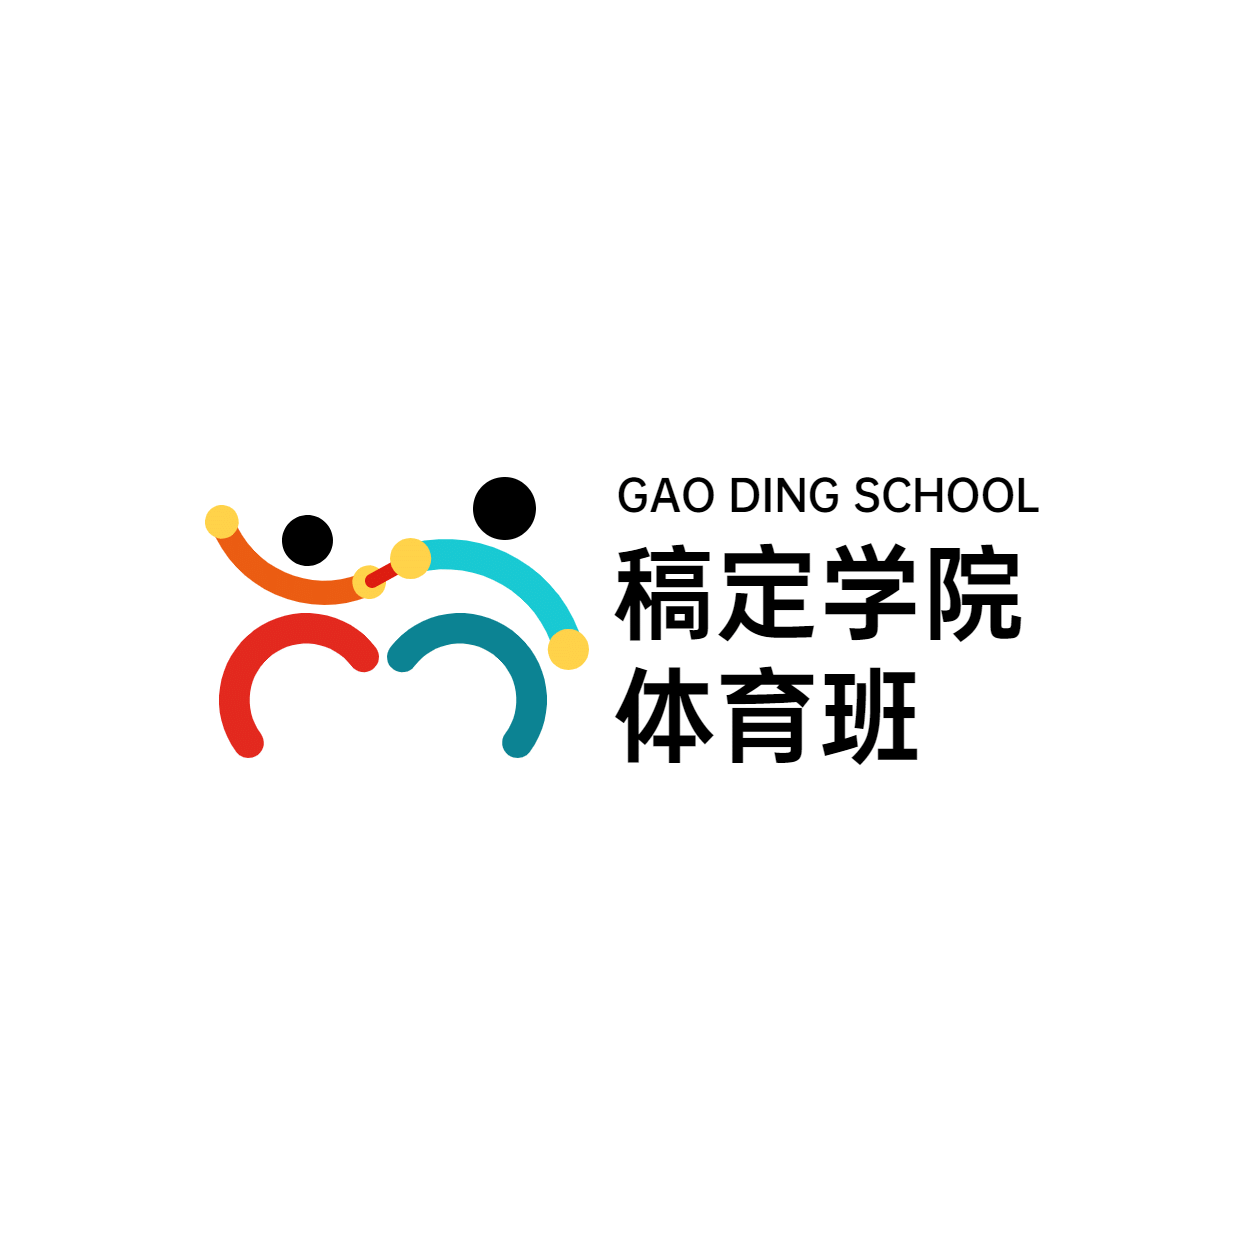 教育培训机构体育班logo